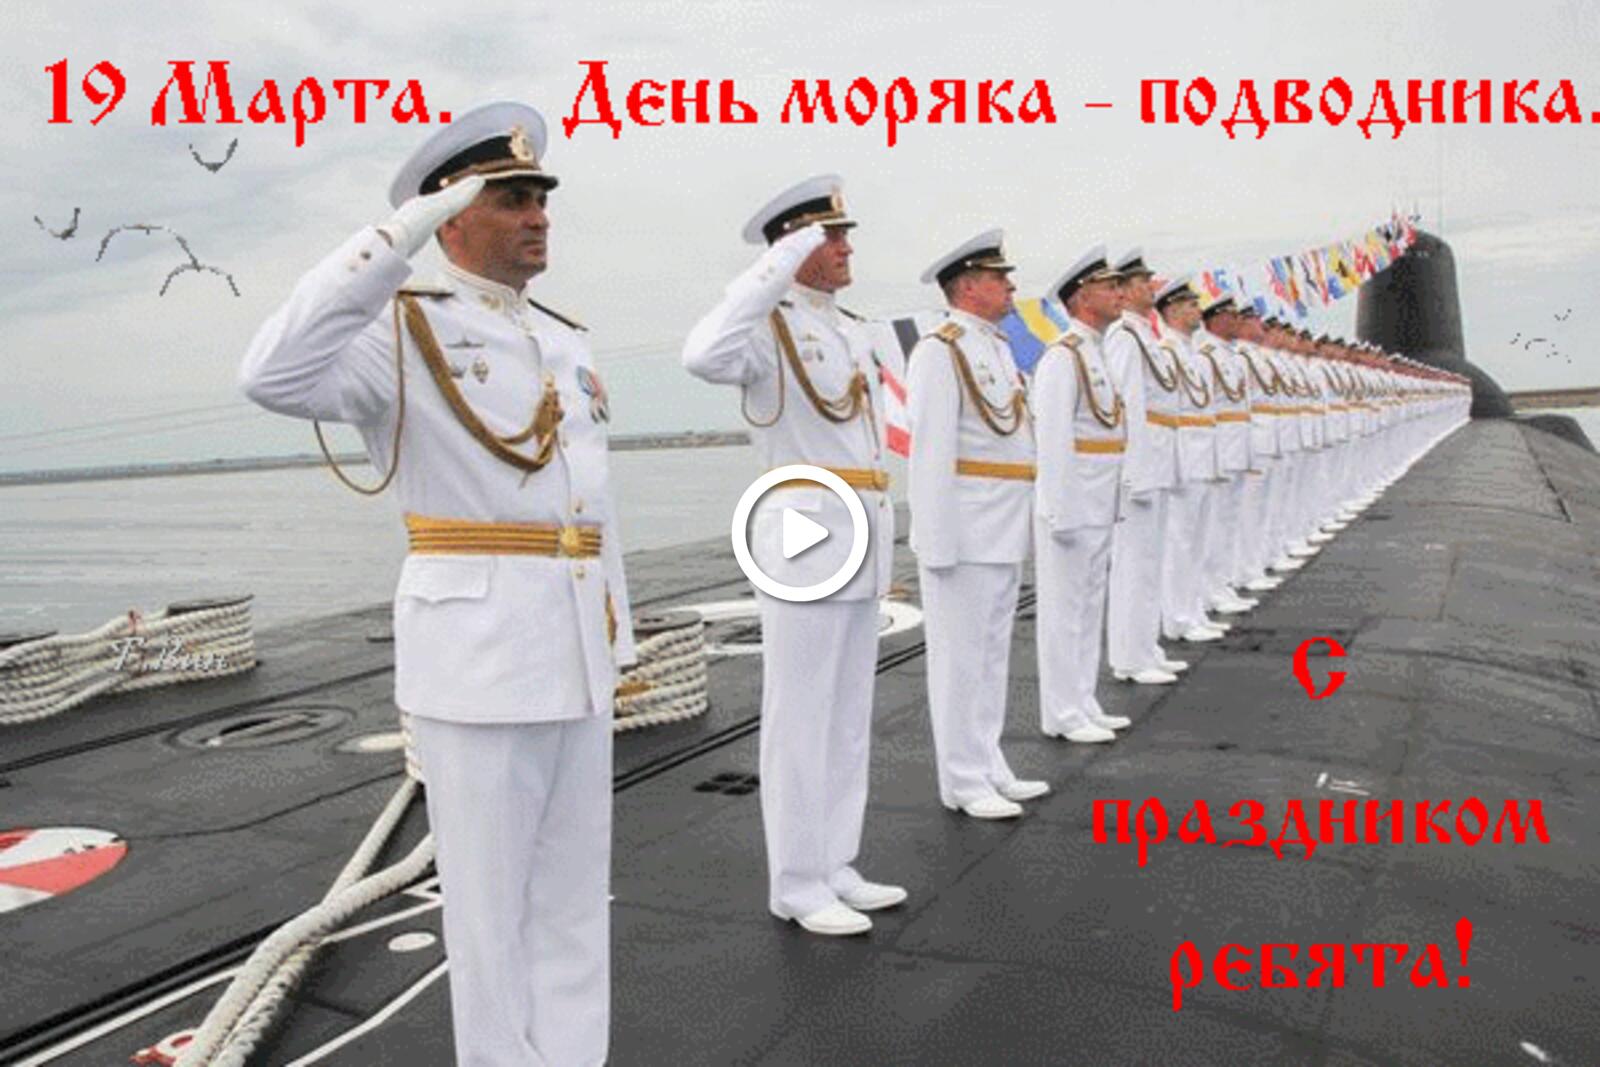 Открытка на тему день моряка - подводника праздники флот бесплатно